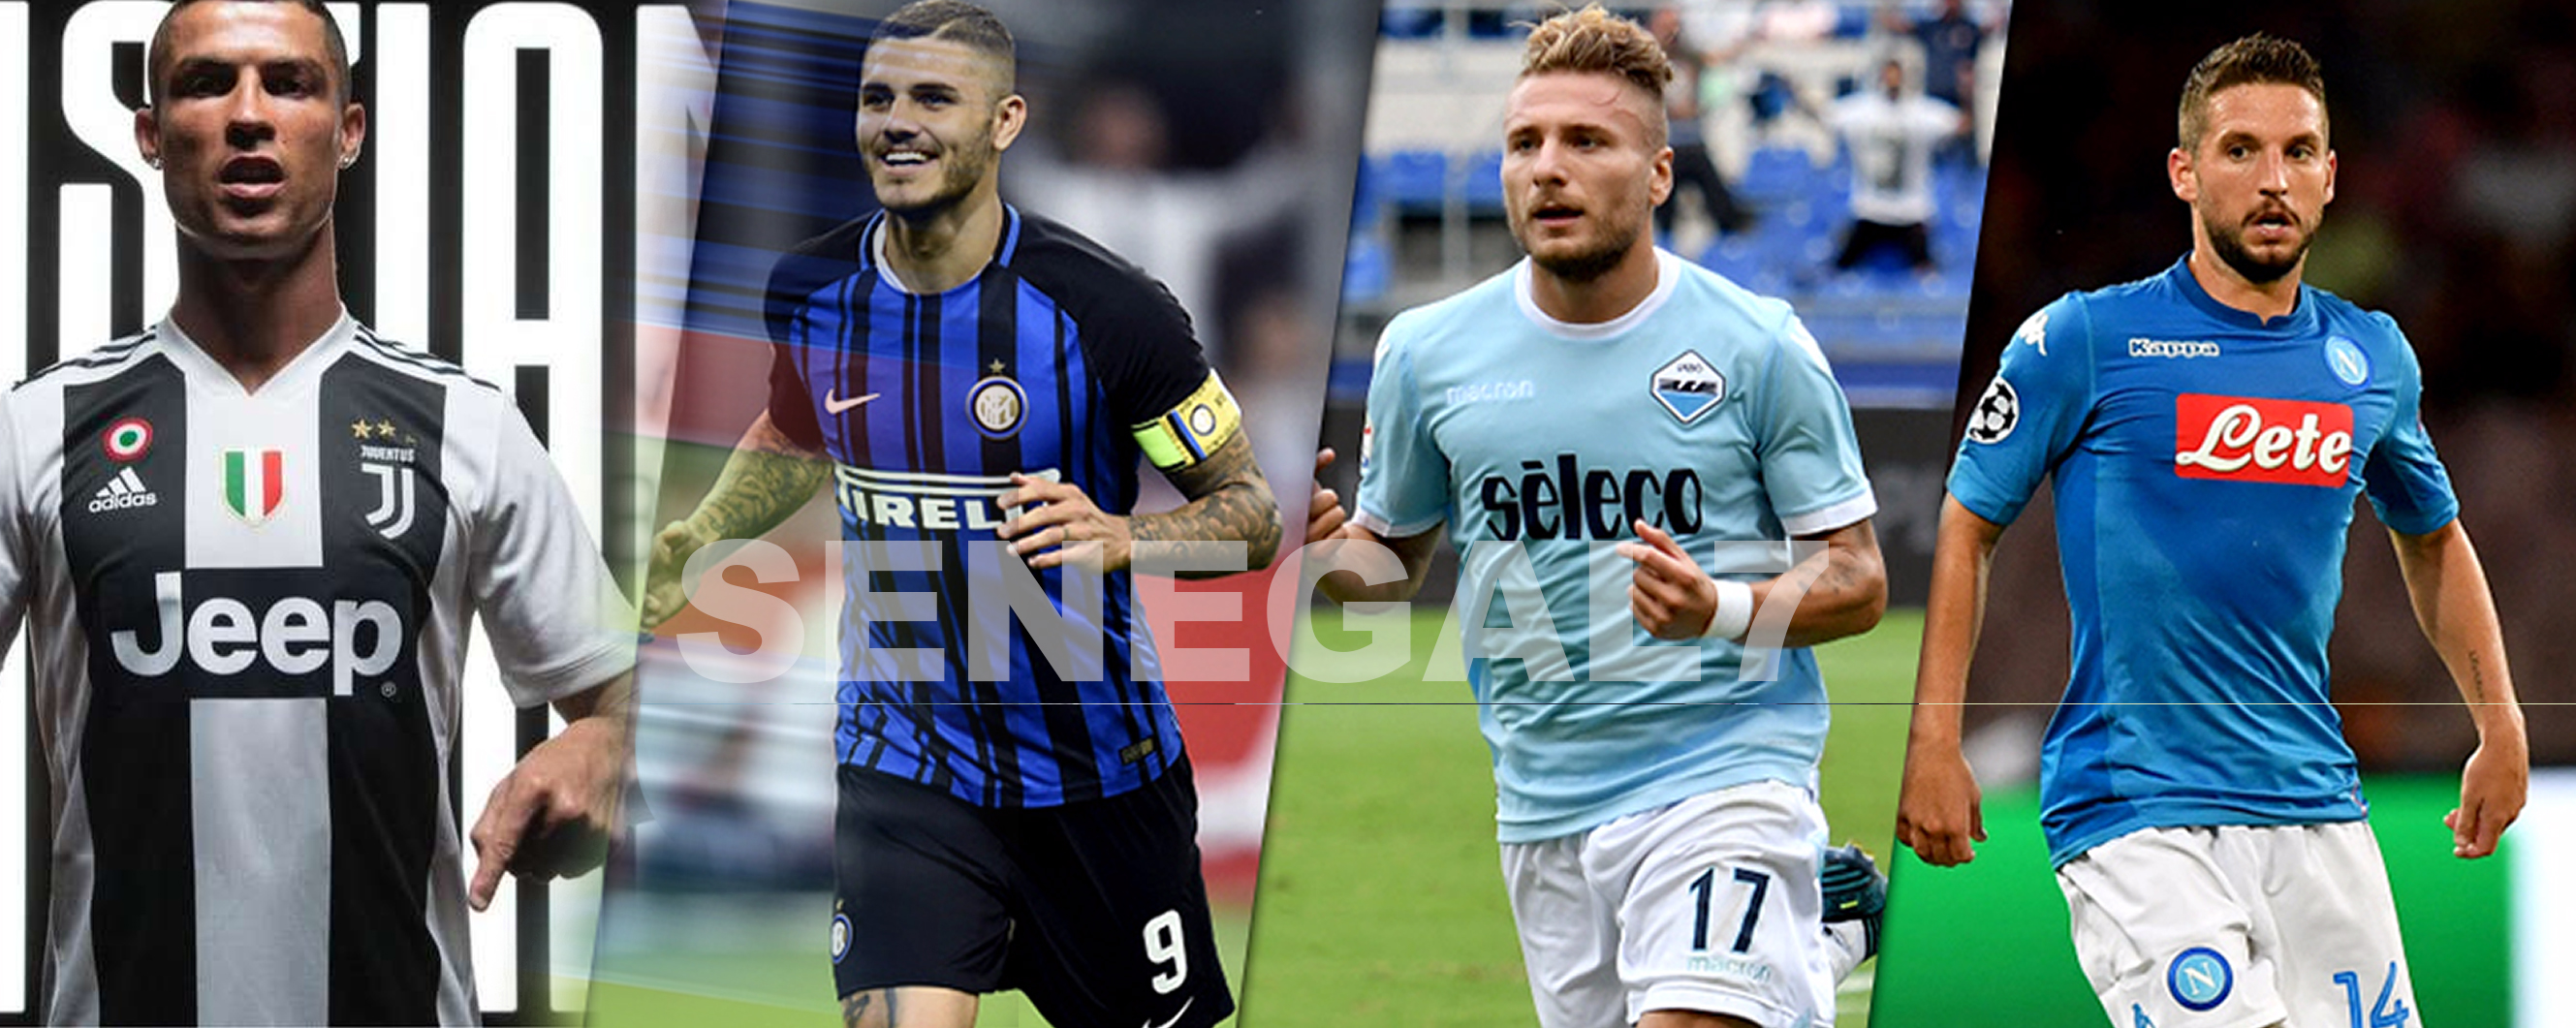 Serie A: Le calendrier de la saison 2018 - 2019 dévoilé